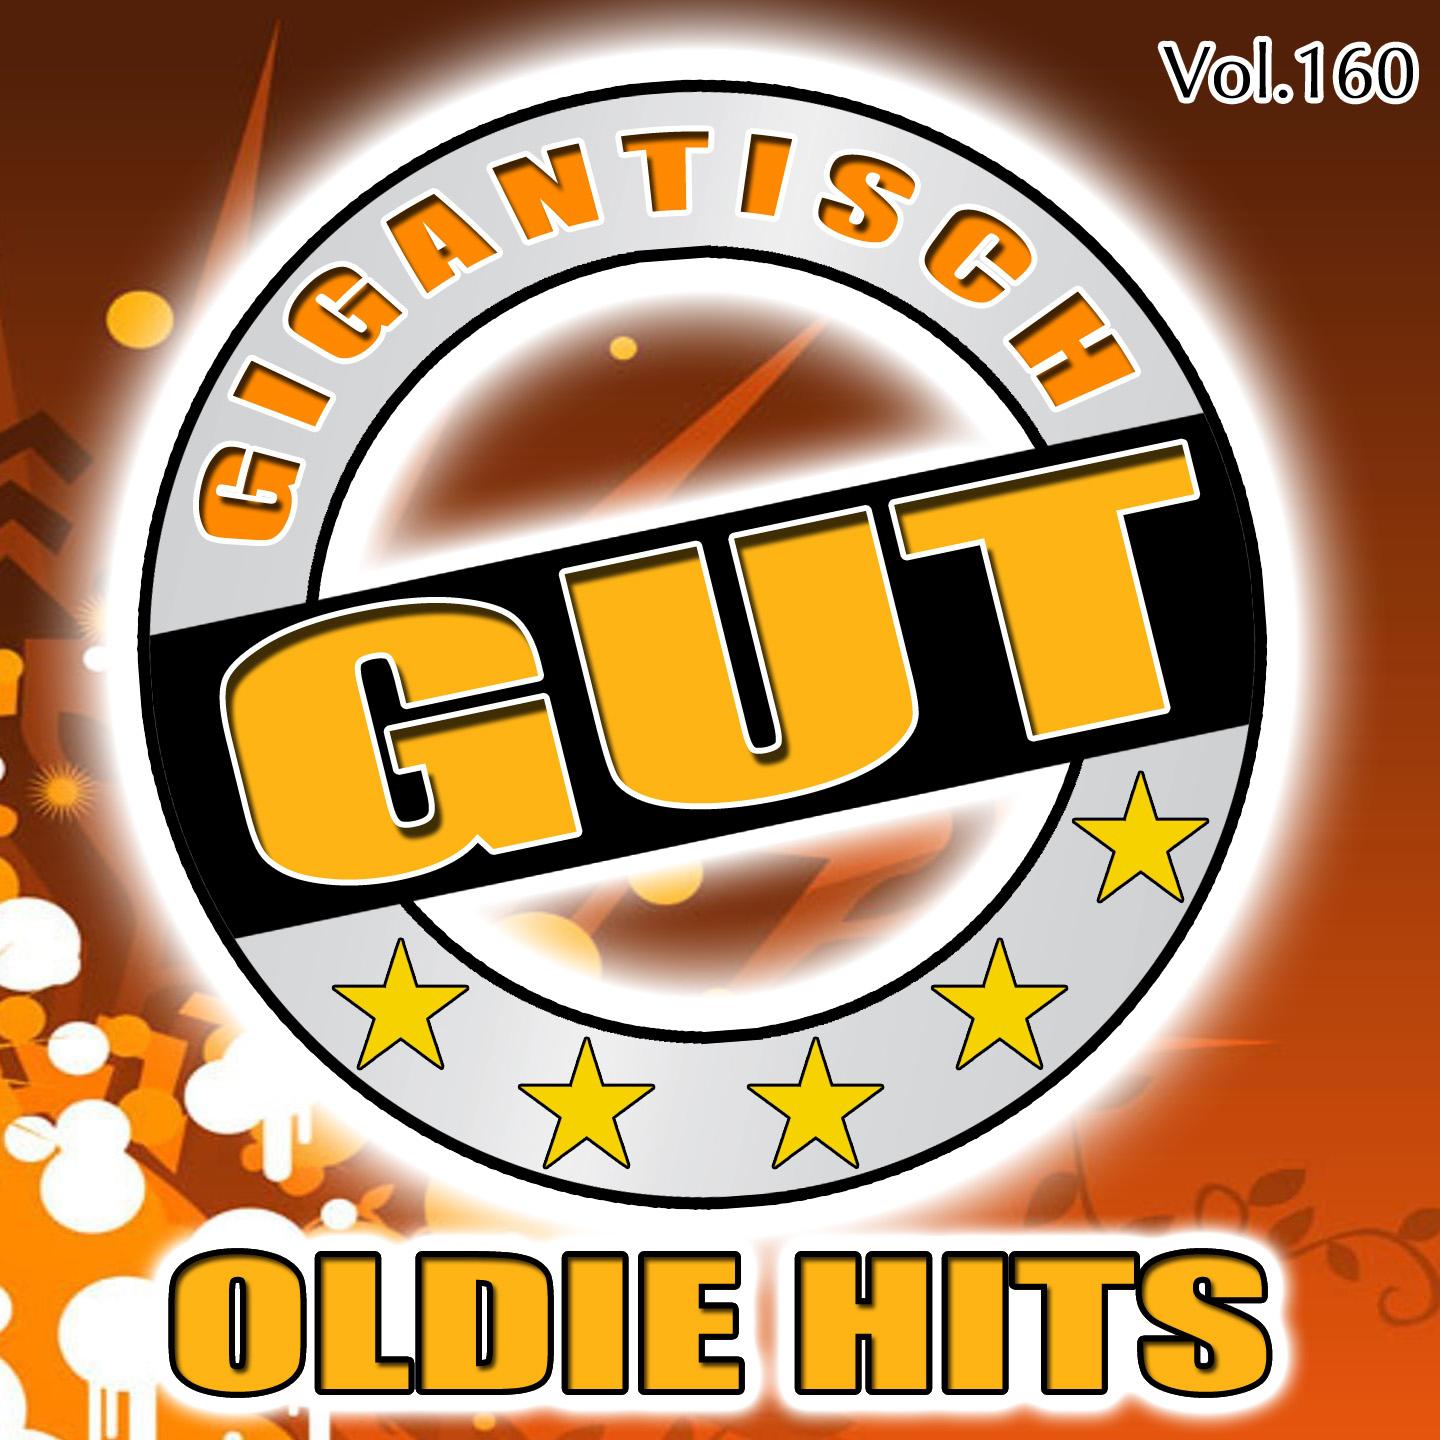 Gigantisch Gut: Oldie Hits, Vol. 160